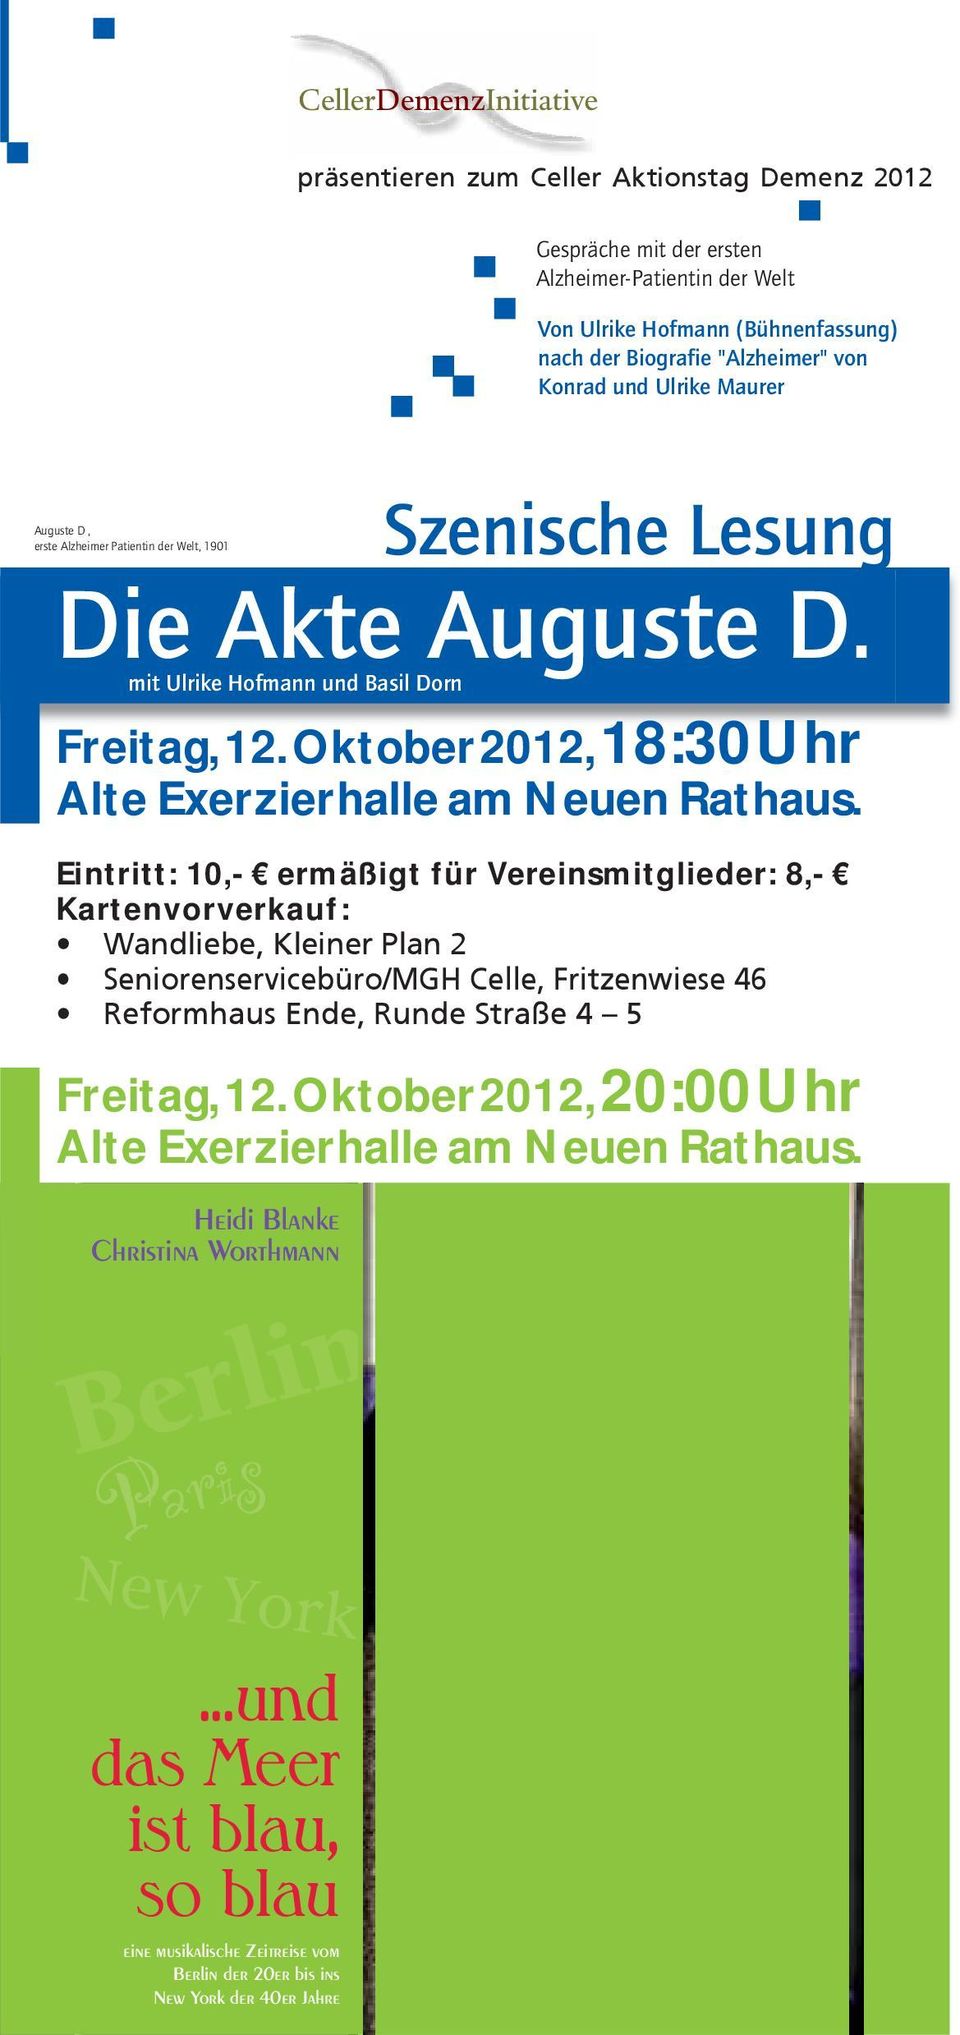 mit Ulrike Hofmann und Basil Dorn Freitag, 12. Oktober 2012, 18:30 Uhr Alte Exerzierhalle am Neuen Rathaus.